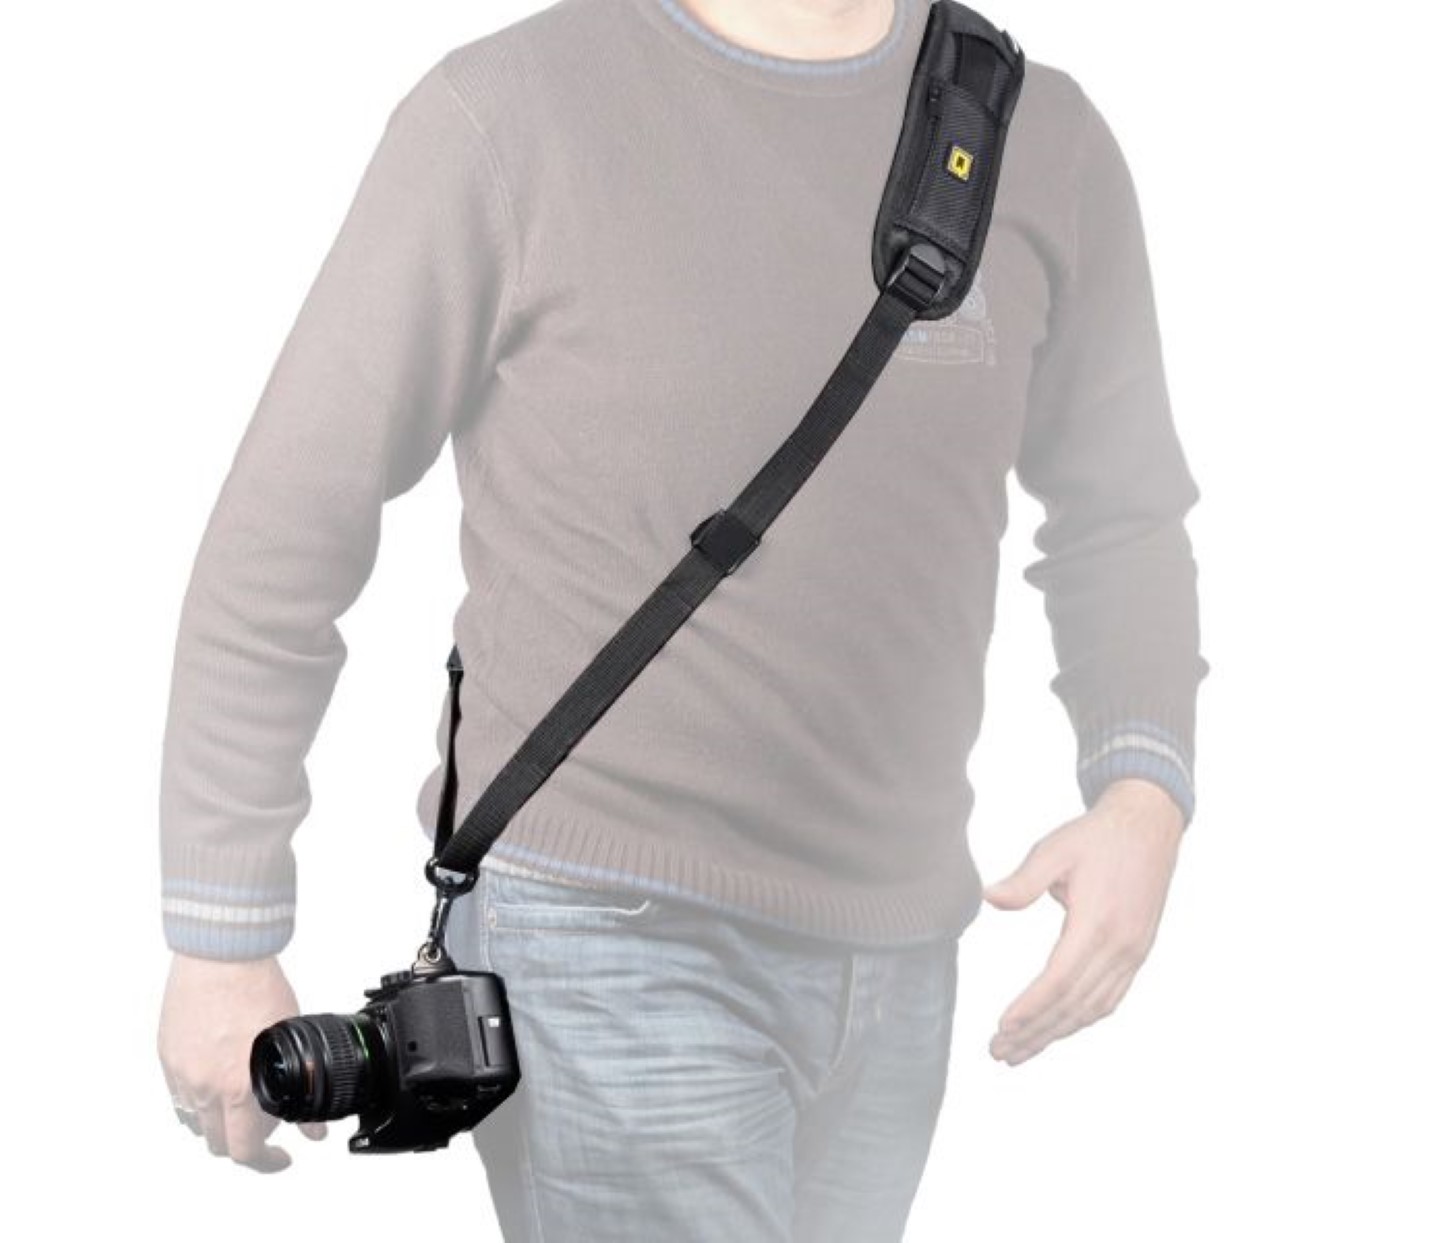 Die Kamera sicher am Körper tragen